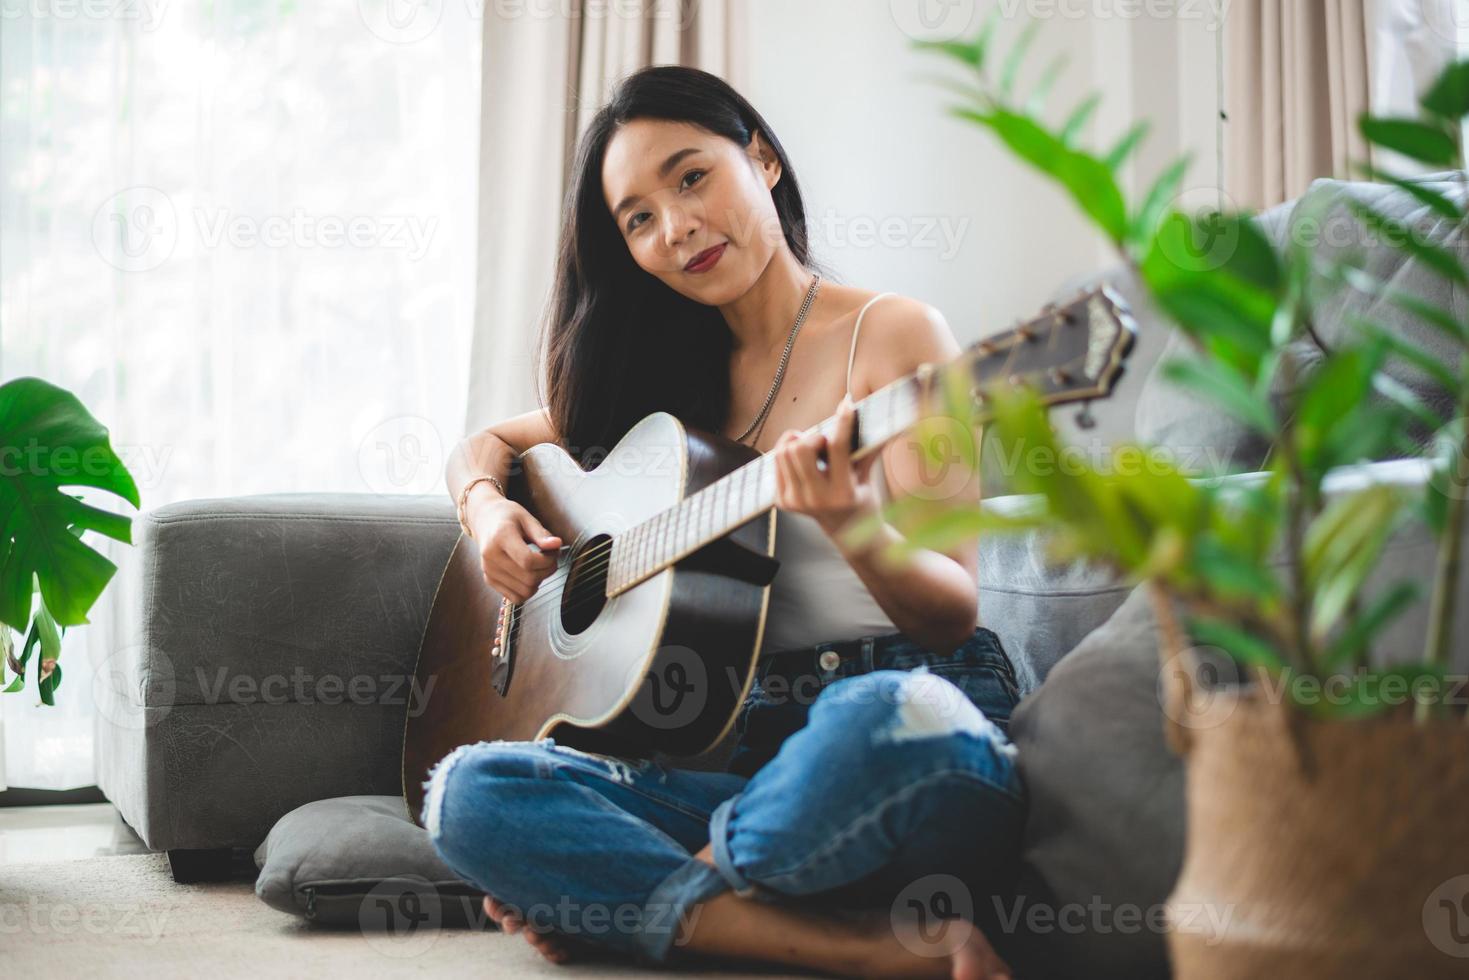 aziatische vrouw die thuis muziek speelt met gitaar, jonge vrouwelijke gitarist muzikant levensstijl met akoestisch kunstinstrument zit om te spelen en een lied te zingen dat geluid maakt in hobby in de huiskamer foto